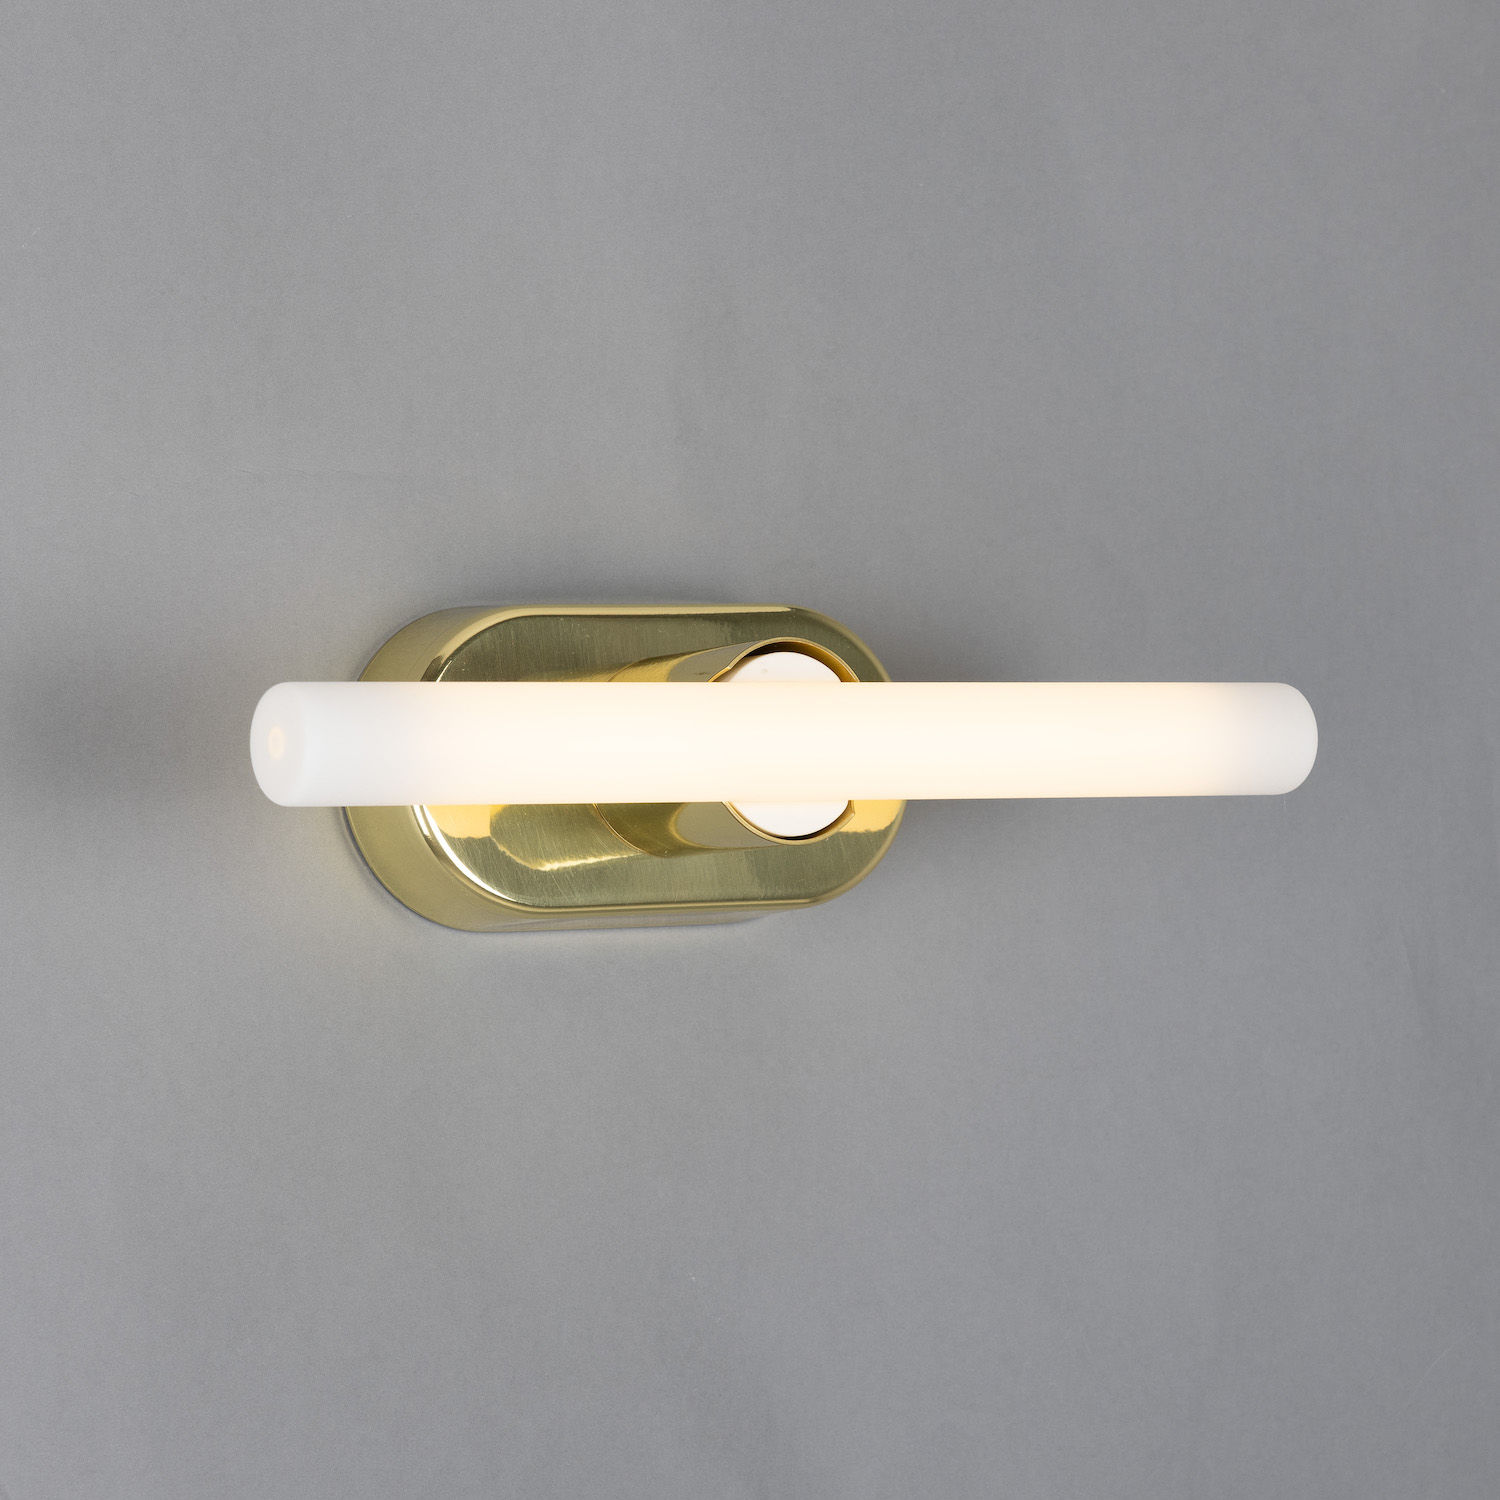 Minimalistische Wand- oder Spiegelleuchte aus Messing: Messing poliert, Modell 1